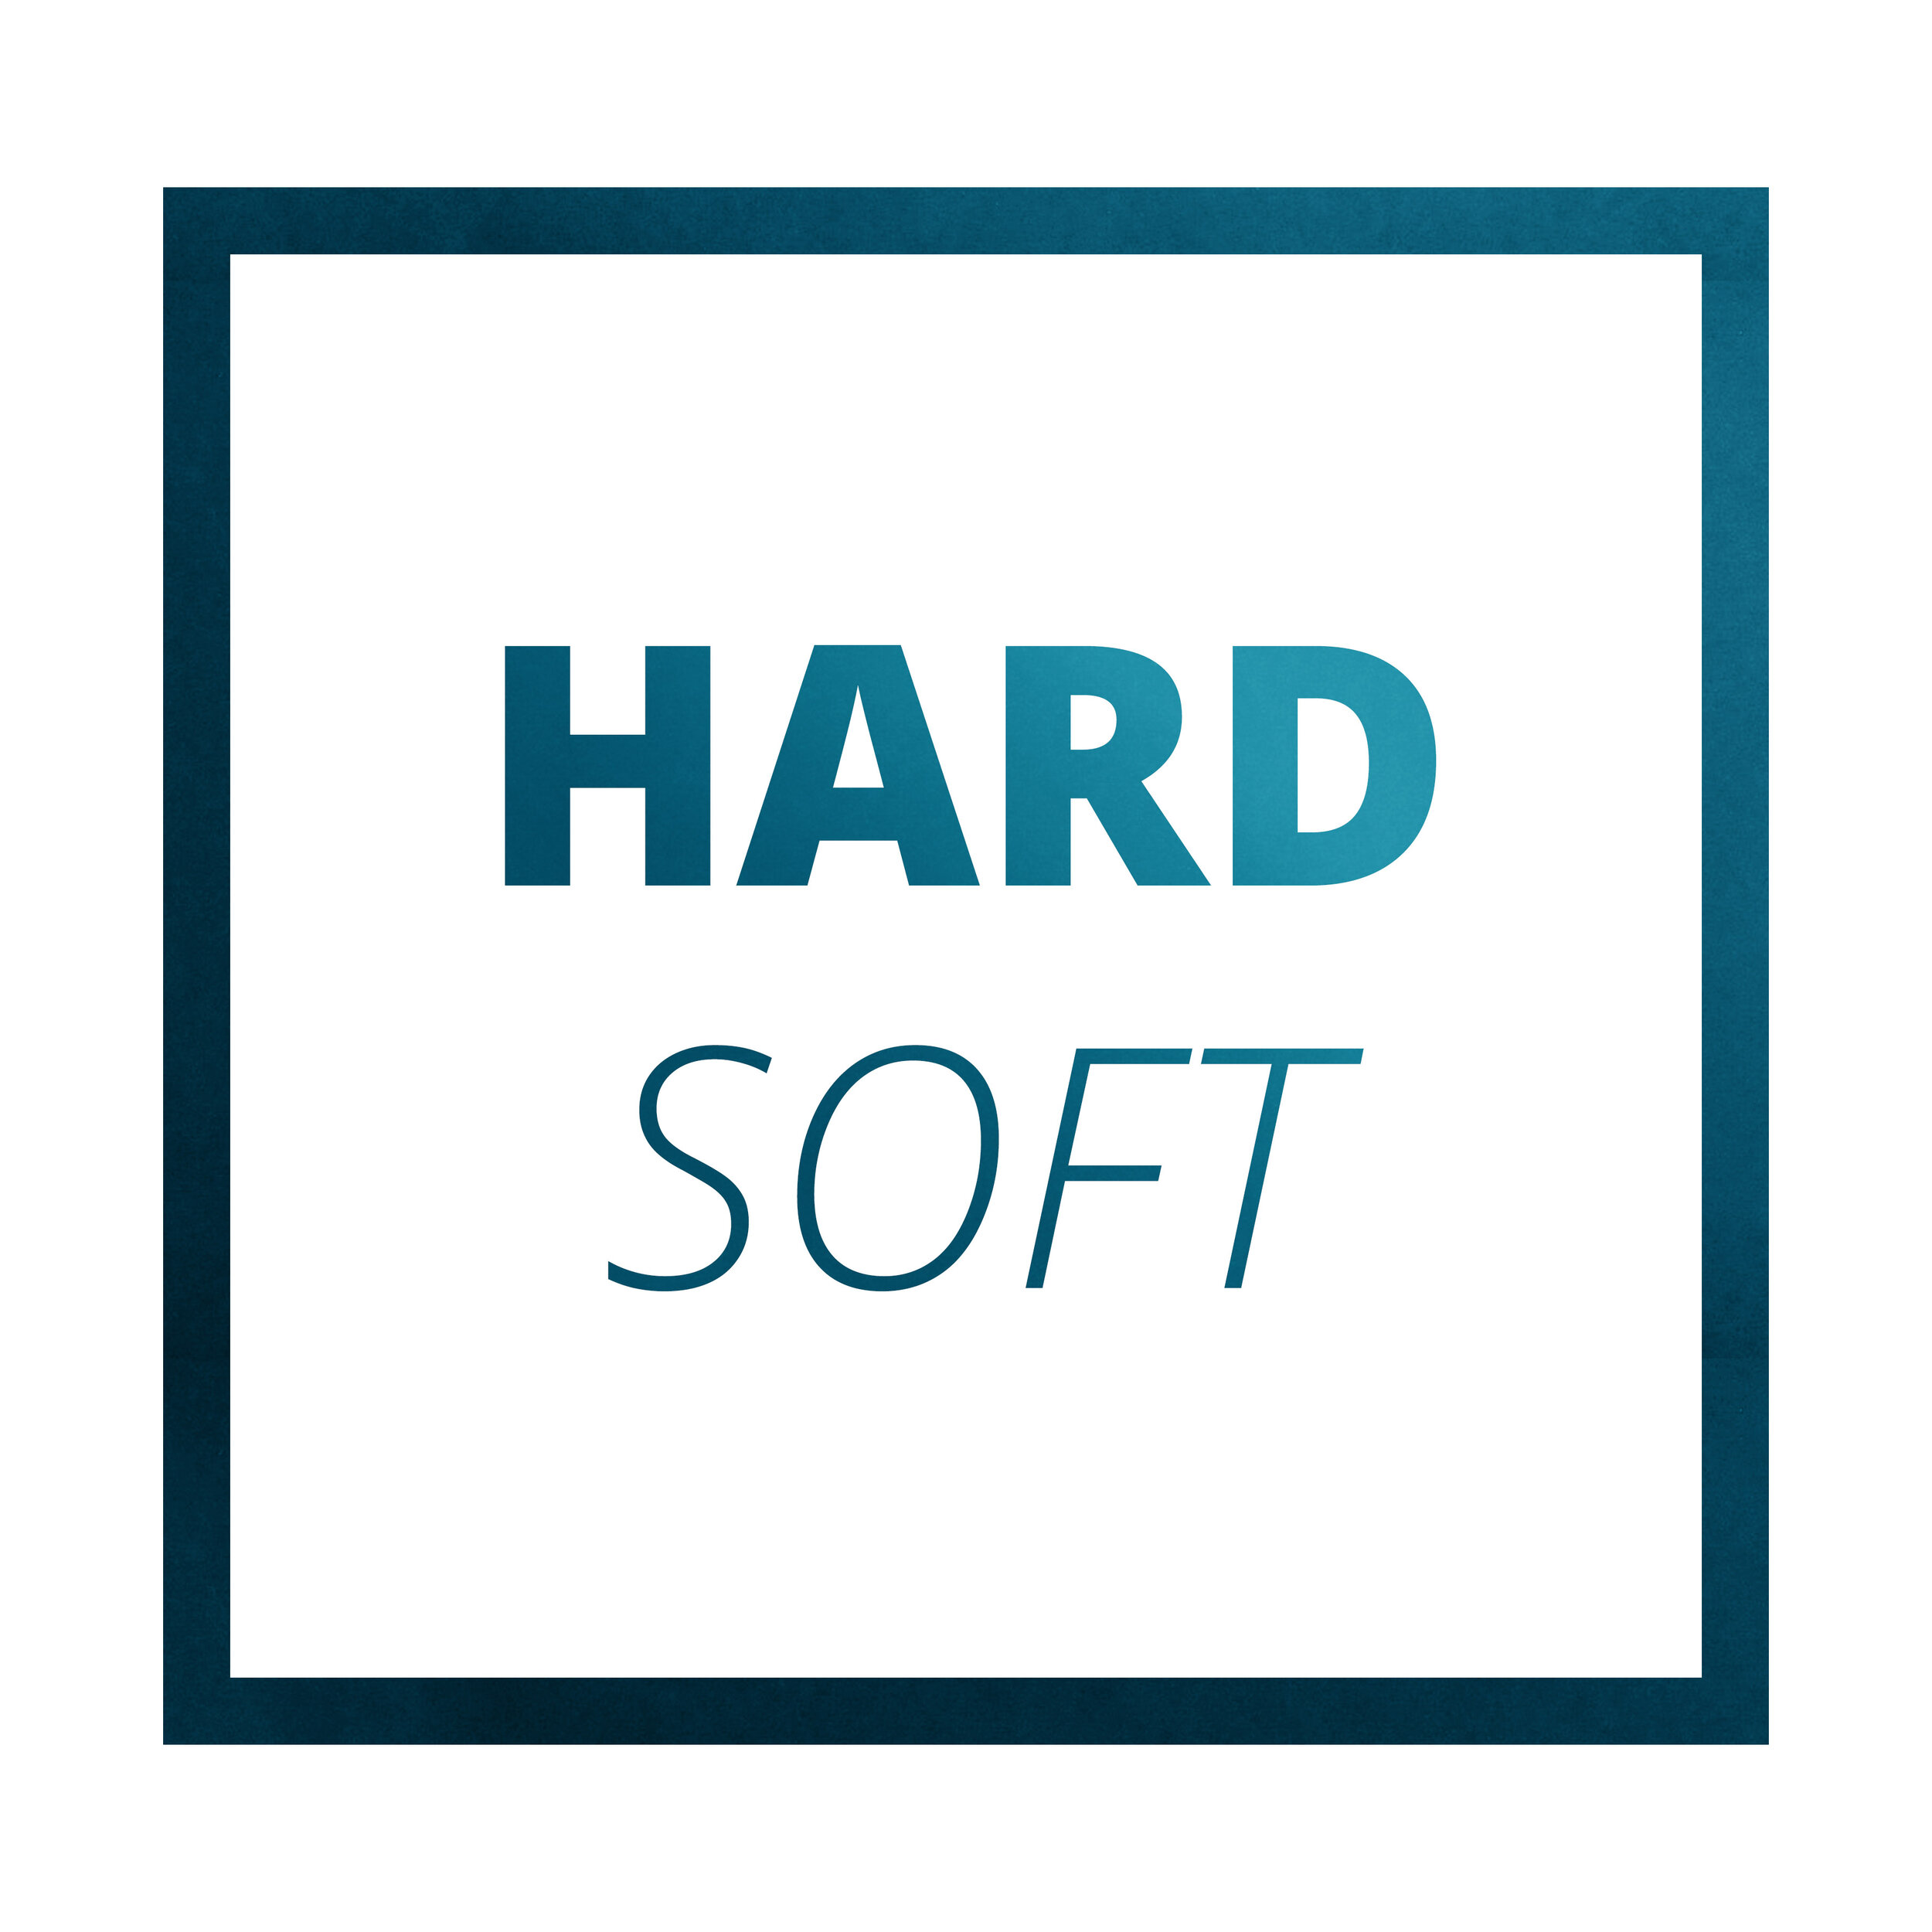 Hard Soft